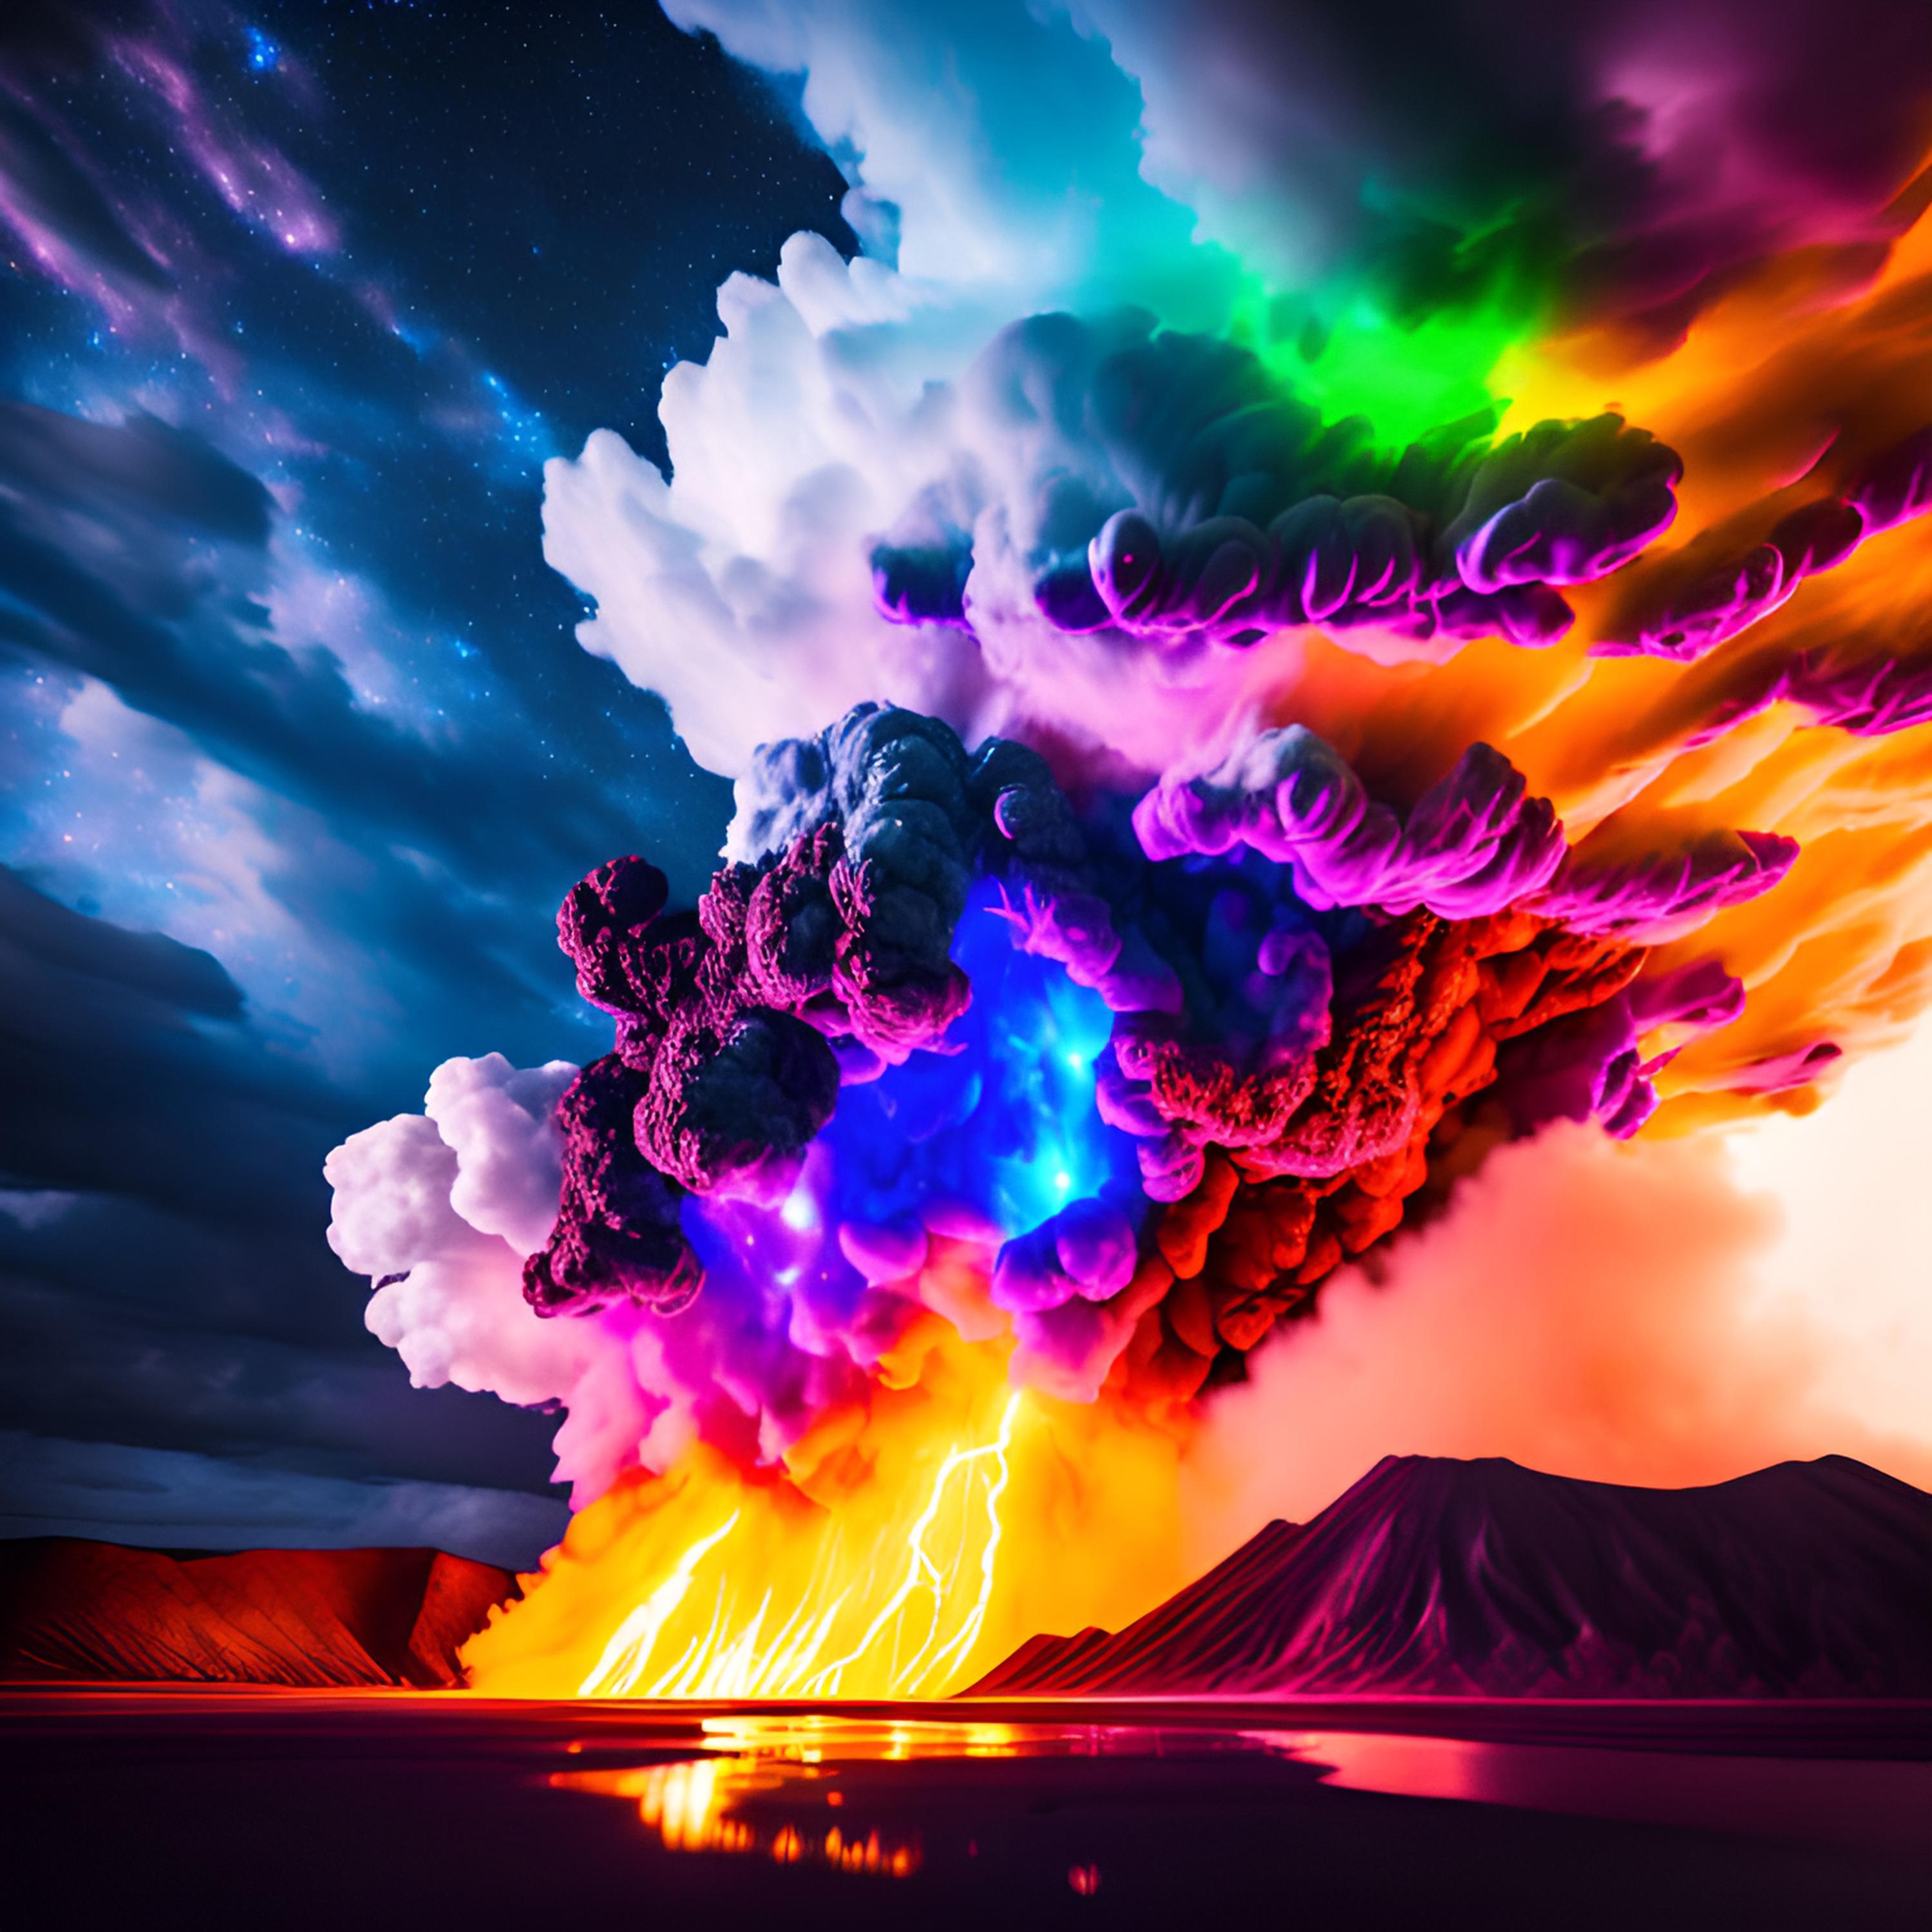 免费照片巨大的高耸惊人的彩色火山云，被下面的火光照耀着